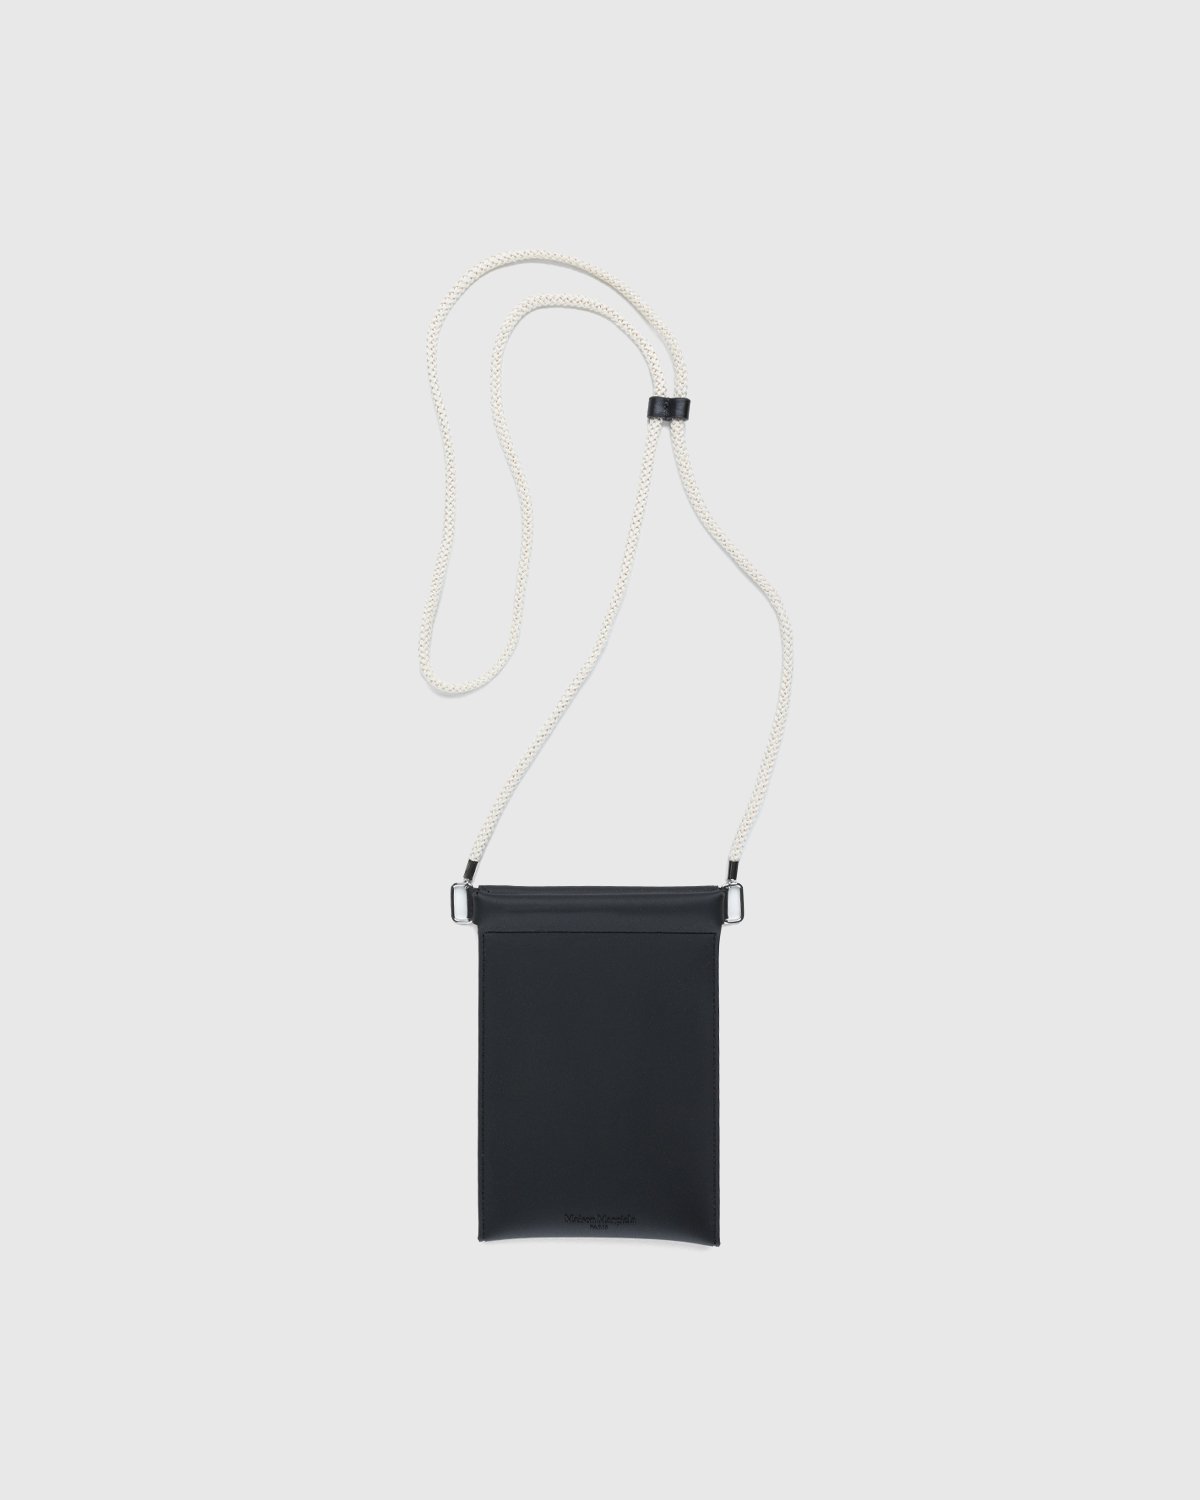 Maison Margiela - Rubber Leather Phone Case Black - Lifestyle - Black - Image 2